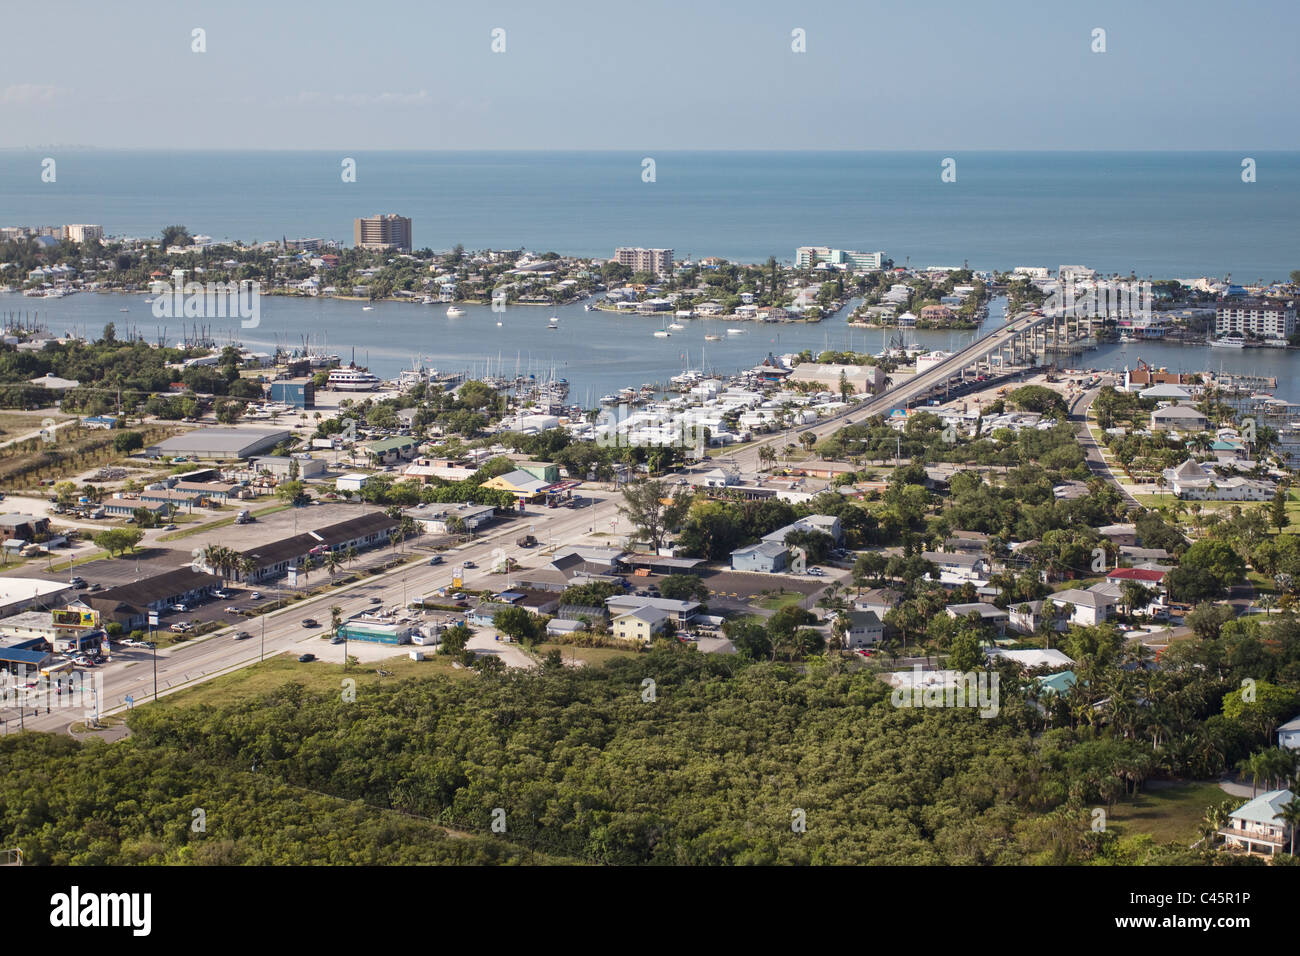 La plage de Fort Myers, Floride du Sud Côte Ouest Banque D'Images